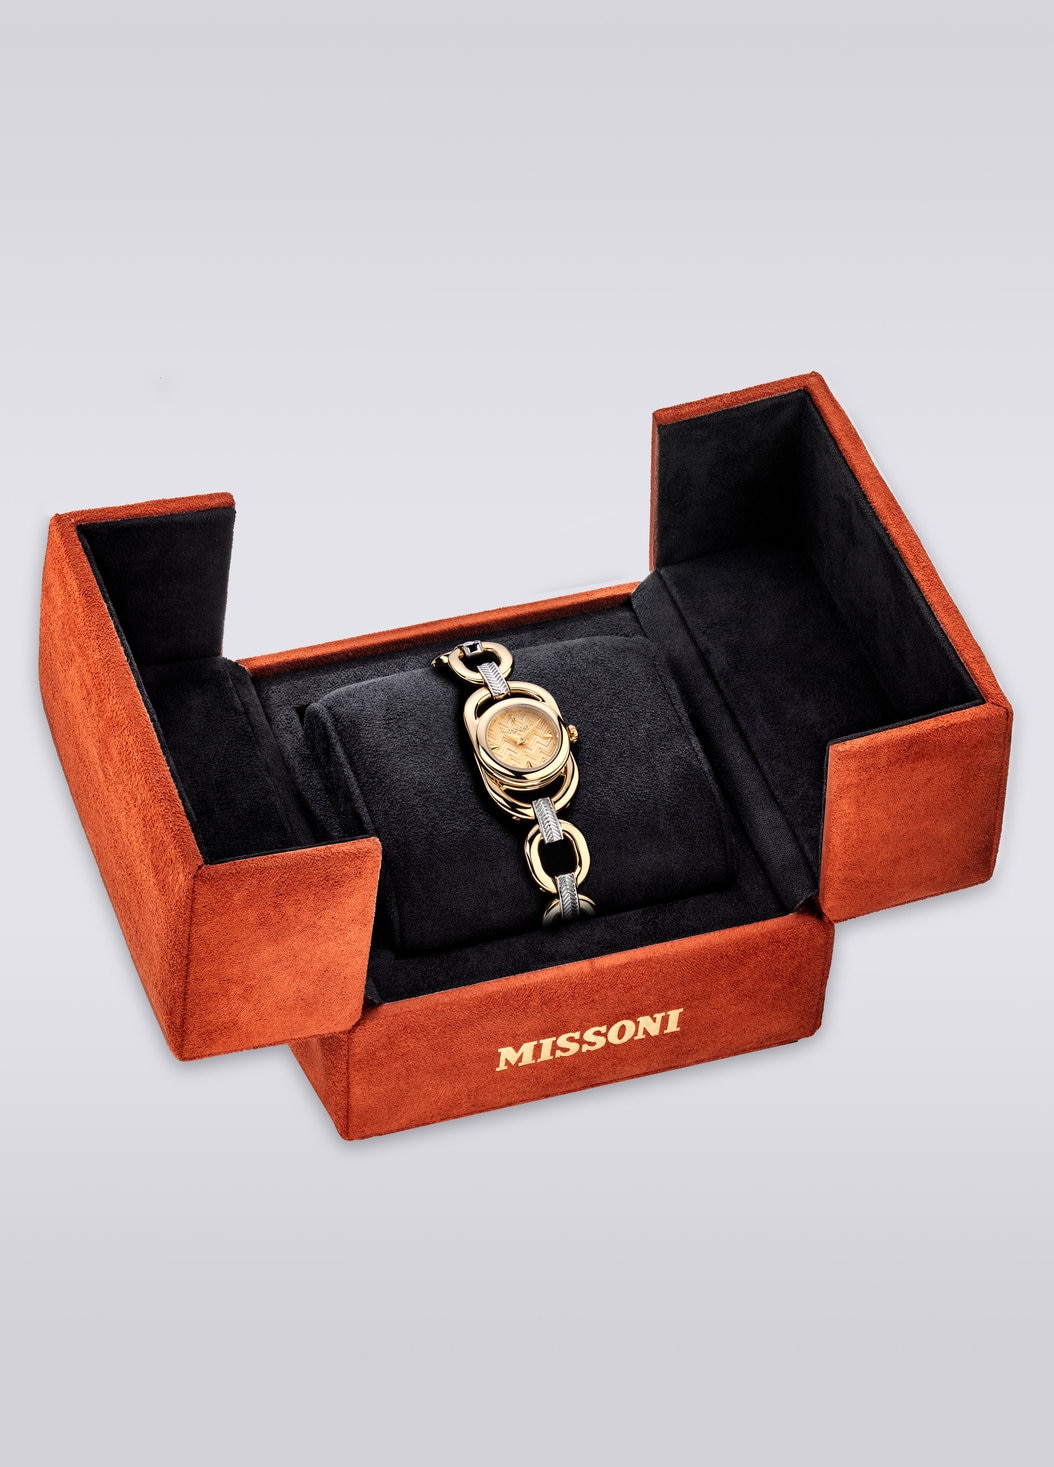 Reloj tamaño caja Missoni Gioiello Chain 22,8 MM, Multicolor  - 8053147046198 - 4